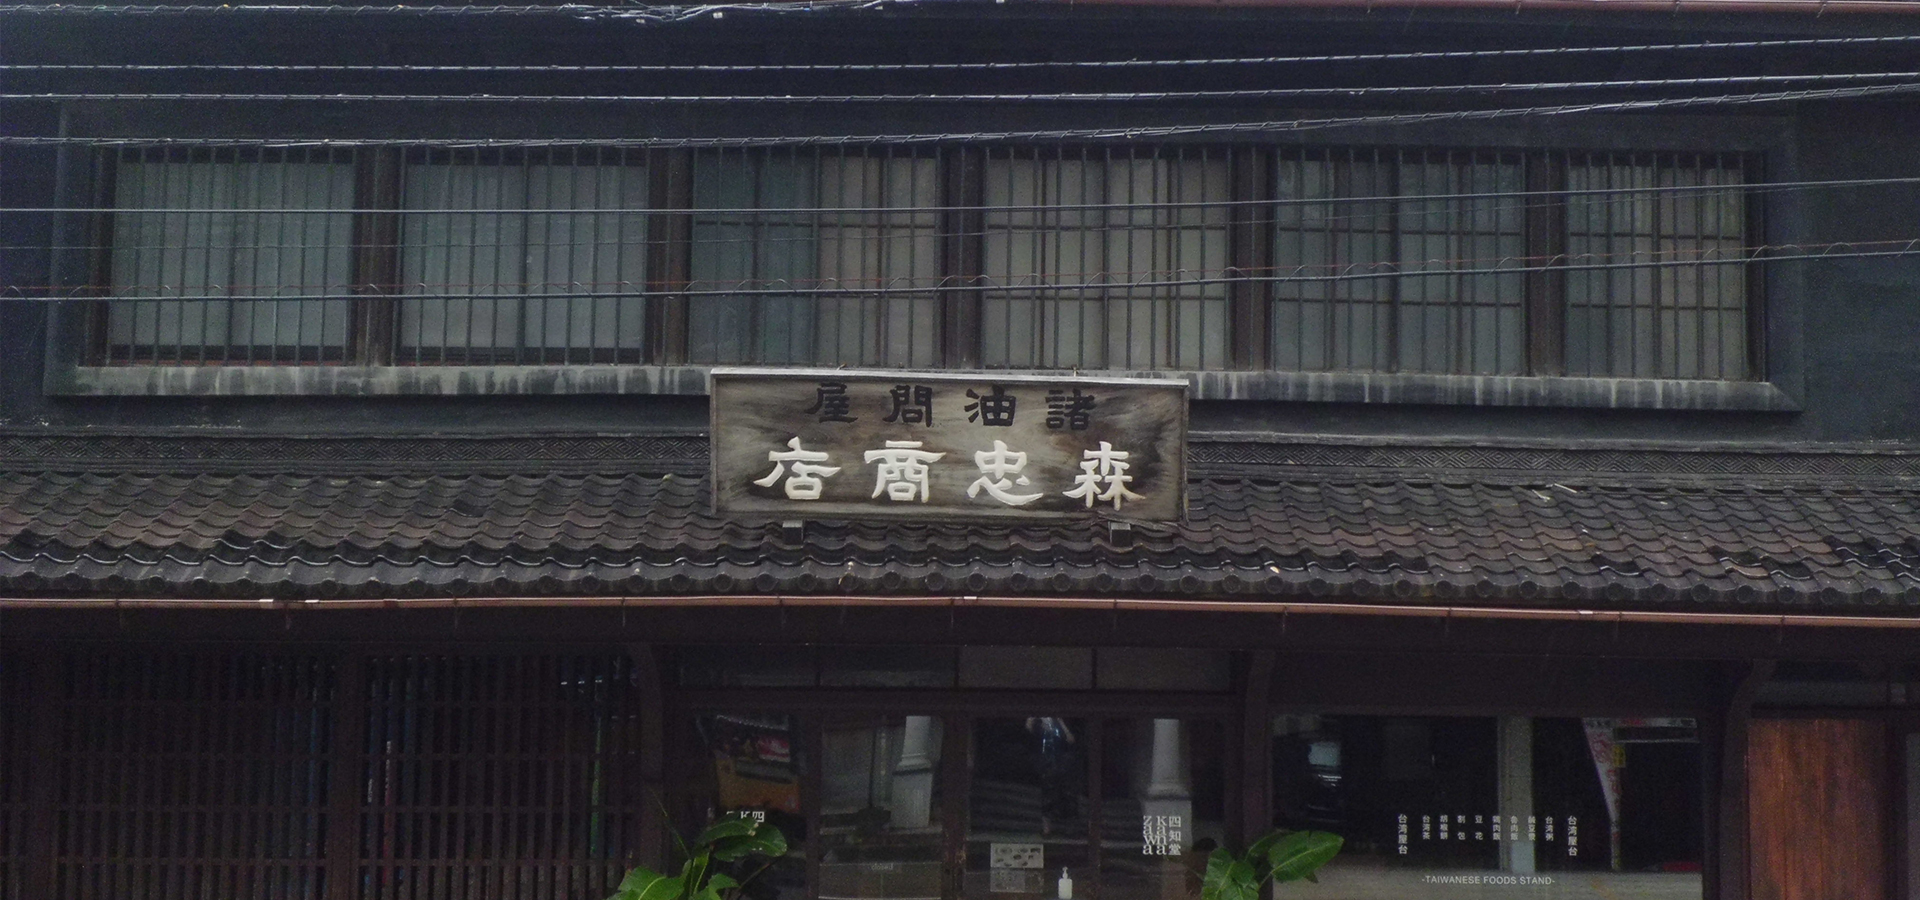 天保十三年創業日本の家屋を彩る伝統の塗装 塗装一筋百八十年